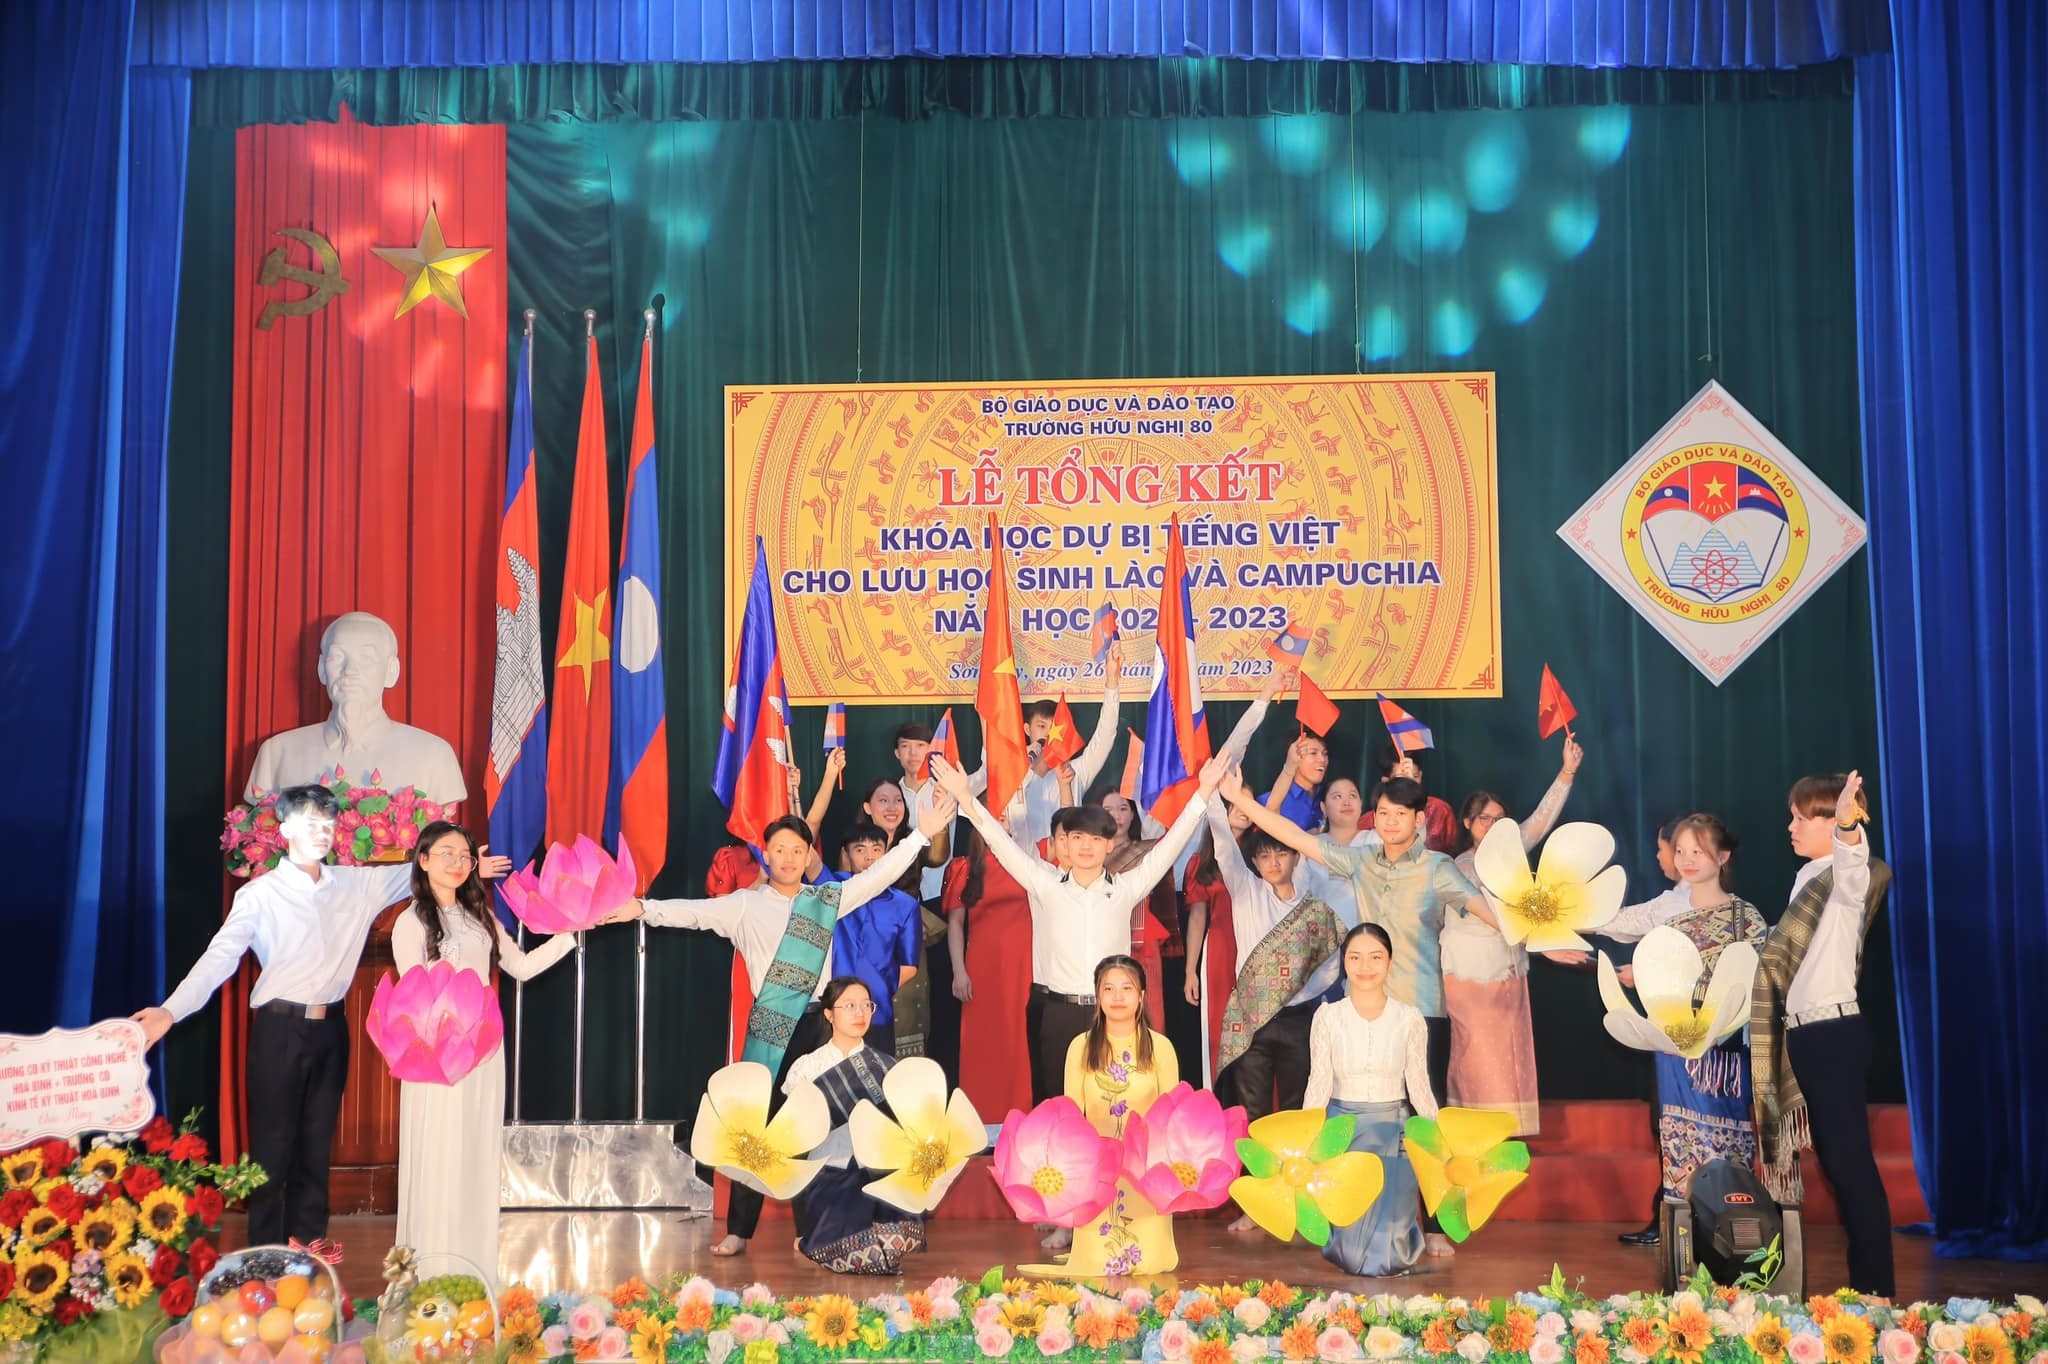 Lễ tổng kết khóa học dự bị Tiếng Việt cho các Lưu học sinh Lào và Campuchia năm học 2022 – 2023 tại trường Hữu nghị 80. (Ảnh: huunghi80.edu.vn)